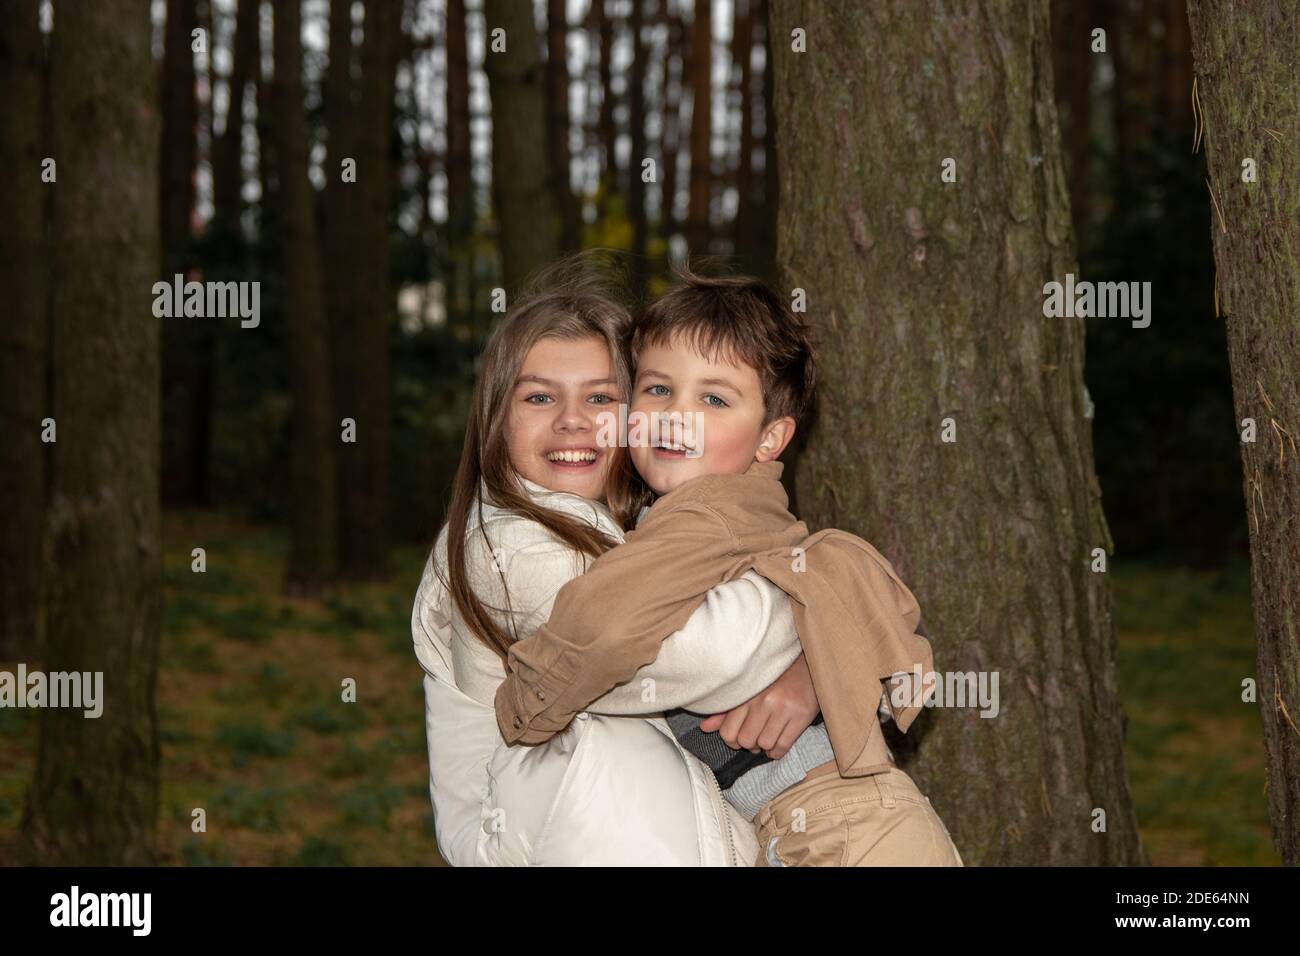 Una ragazza adolescente in un vestito leggero abbraccia il suo fratello minore. I bambini sono felici e ridono tra gli alberi della foresta. Vera infanzia e famiglia happine Foto Stock